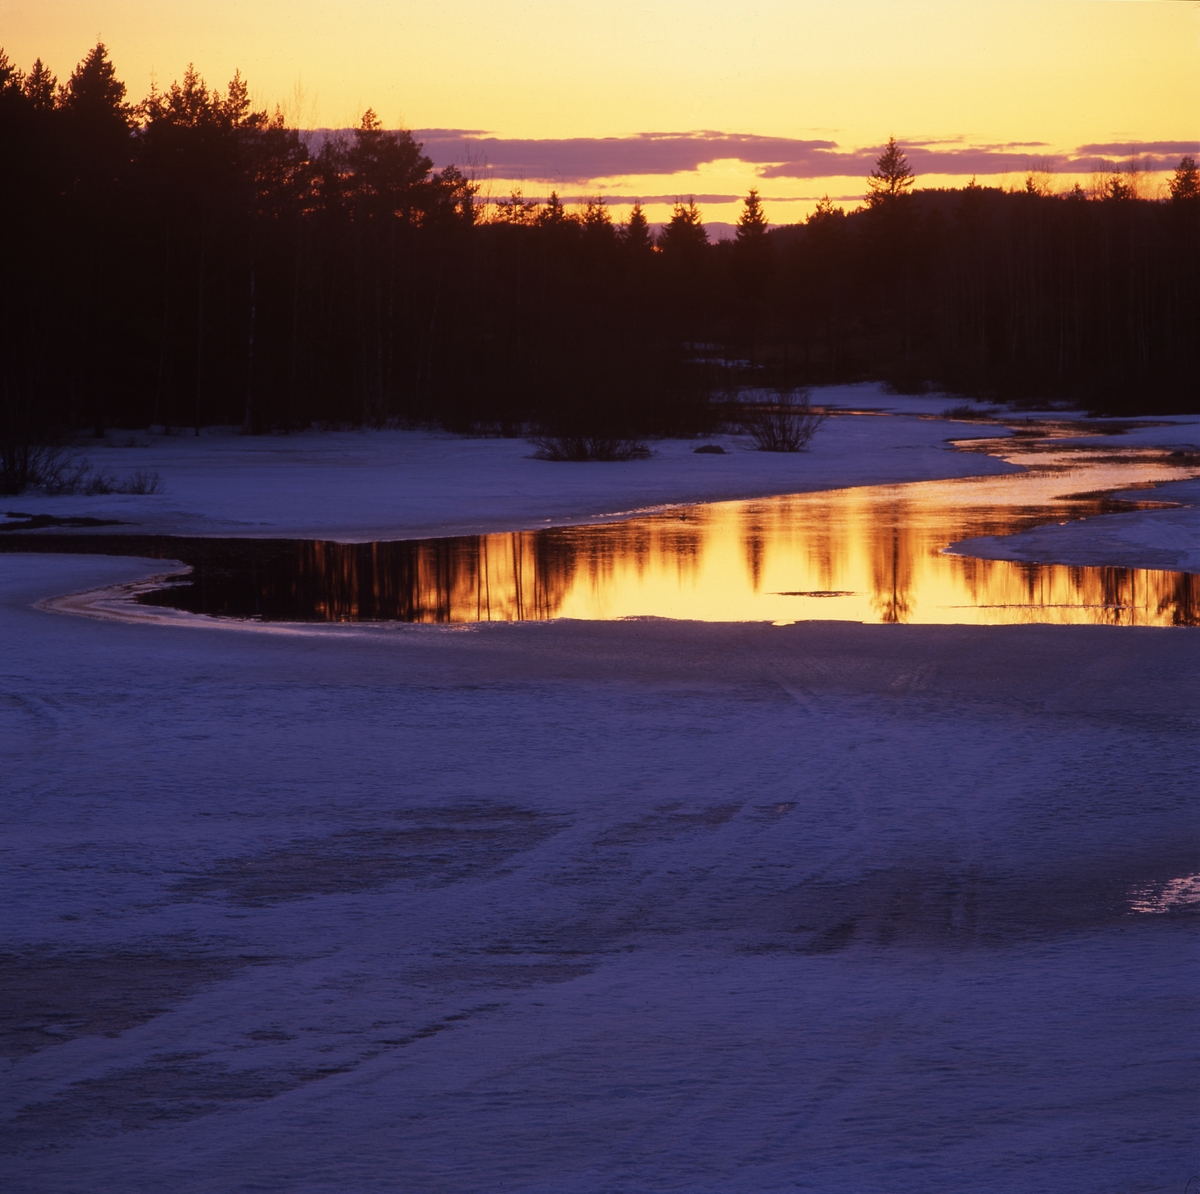 Solnedgång över skog och vatten mellan Tegeltjär och Skästra 22 april 2001.